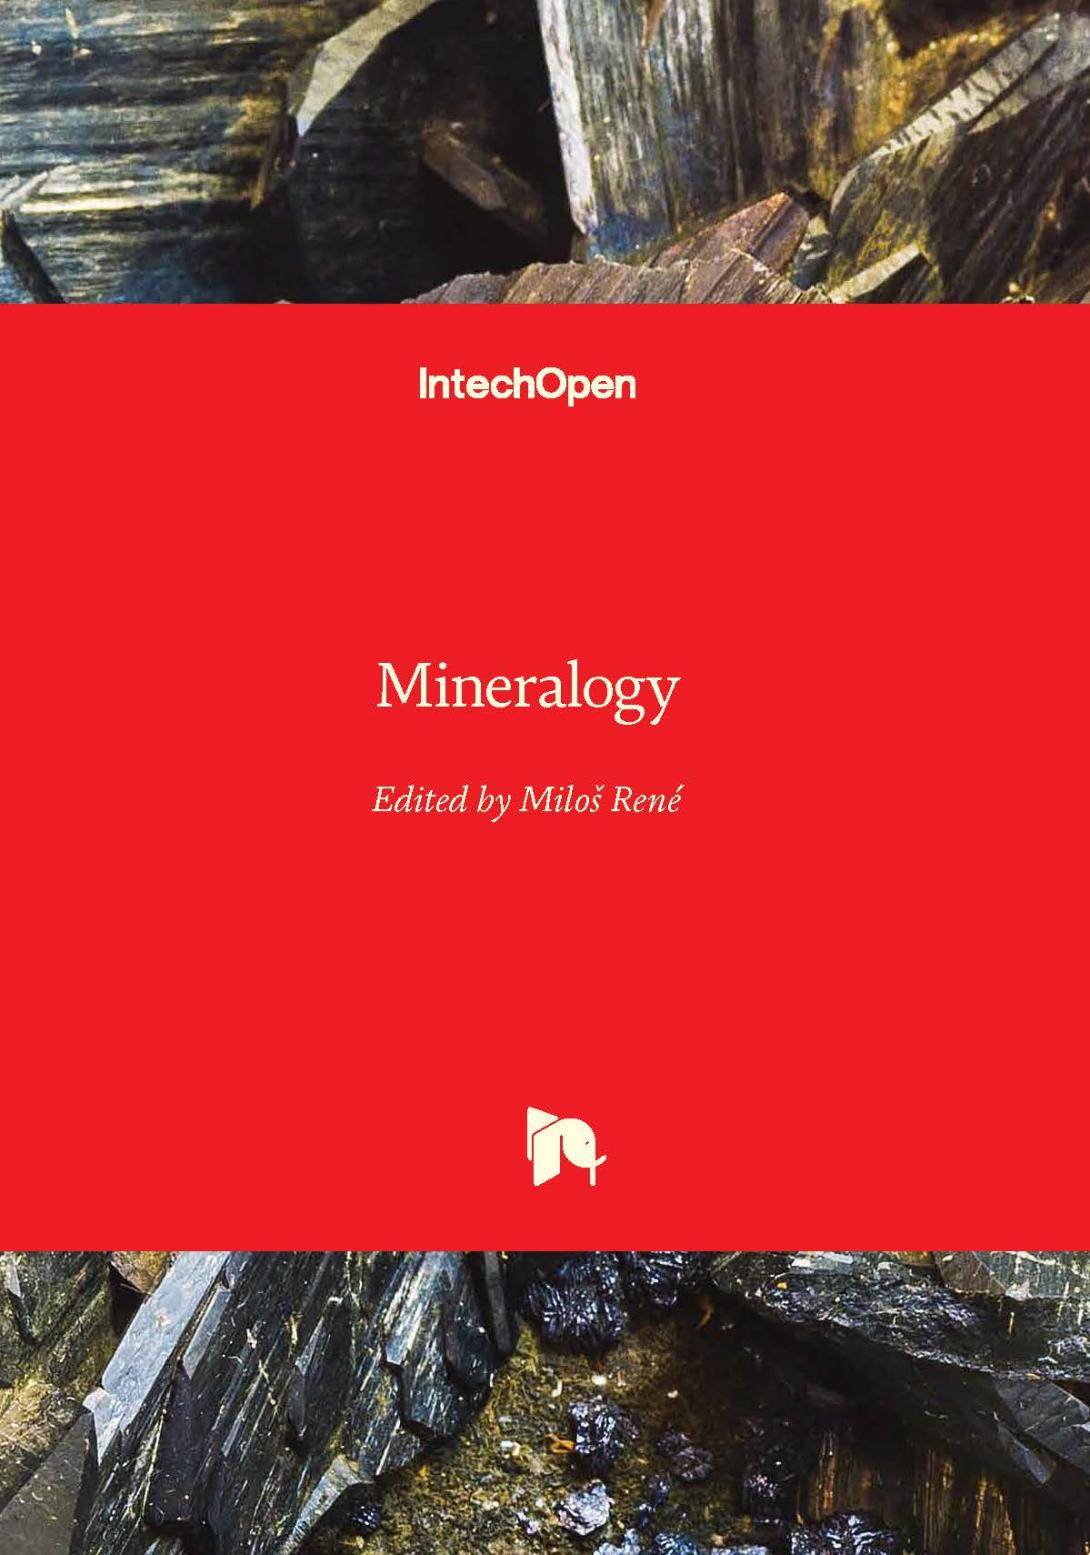 Mineralogy-titulni-strana